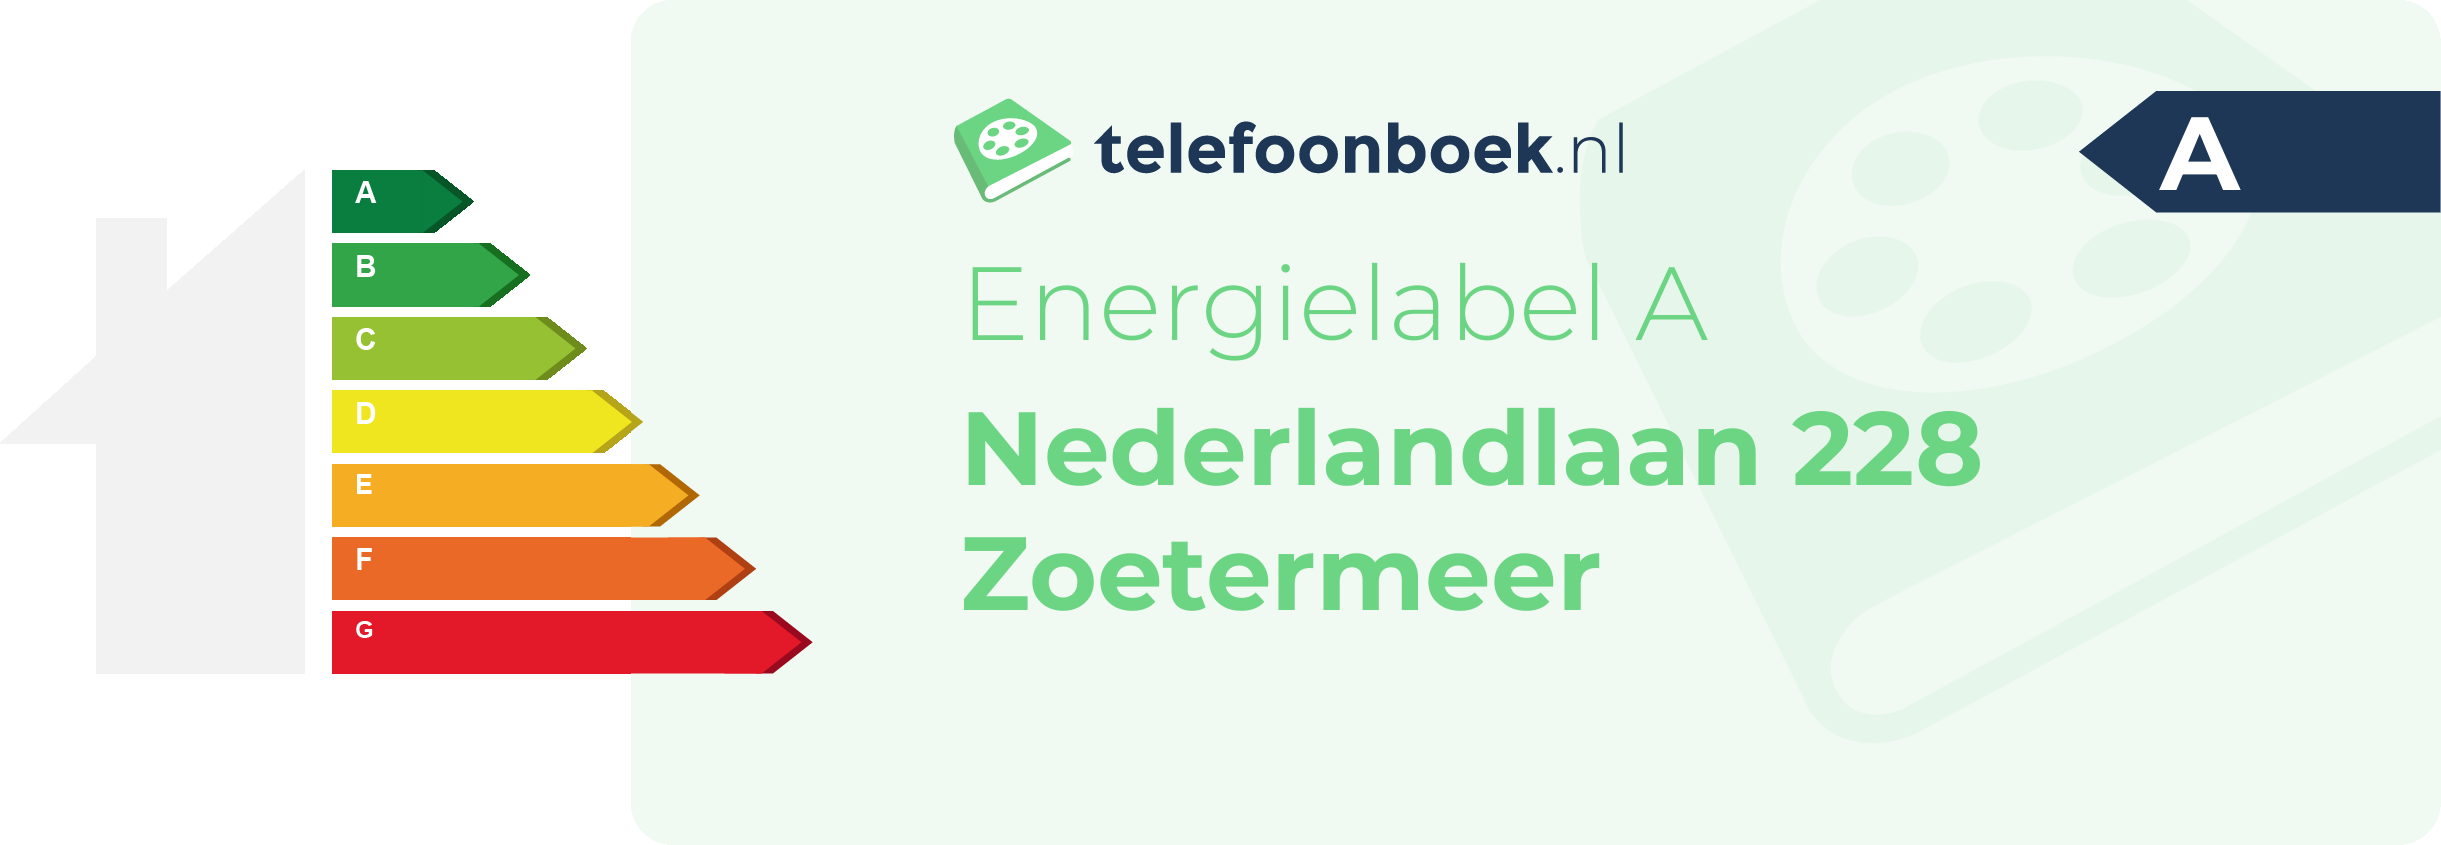 Energielabel Nederlandlaan 228 Zoetermeer